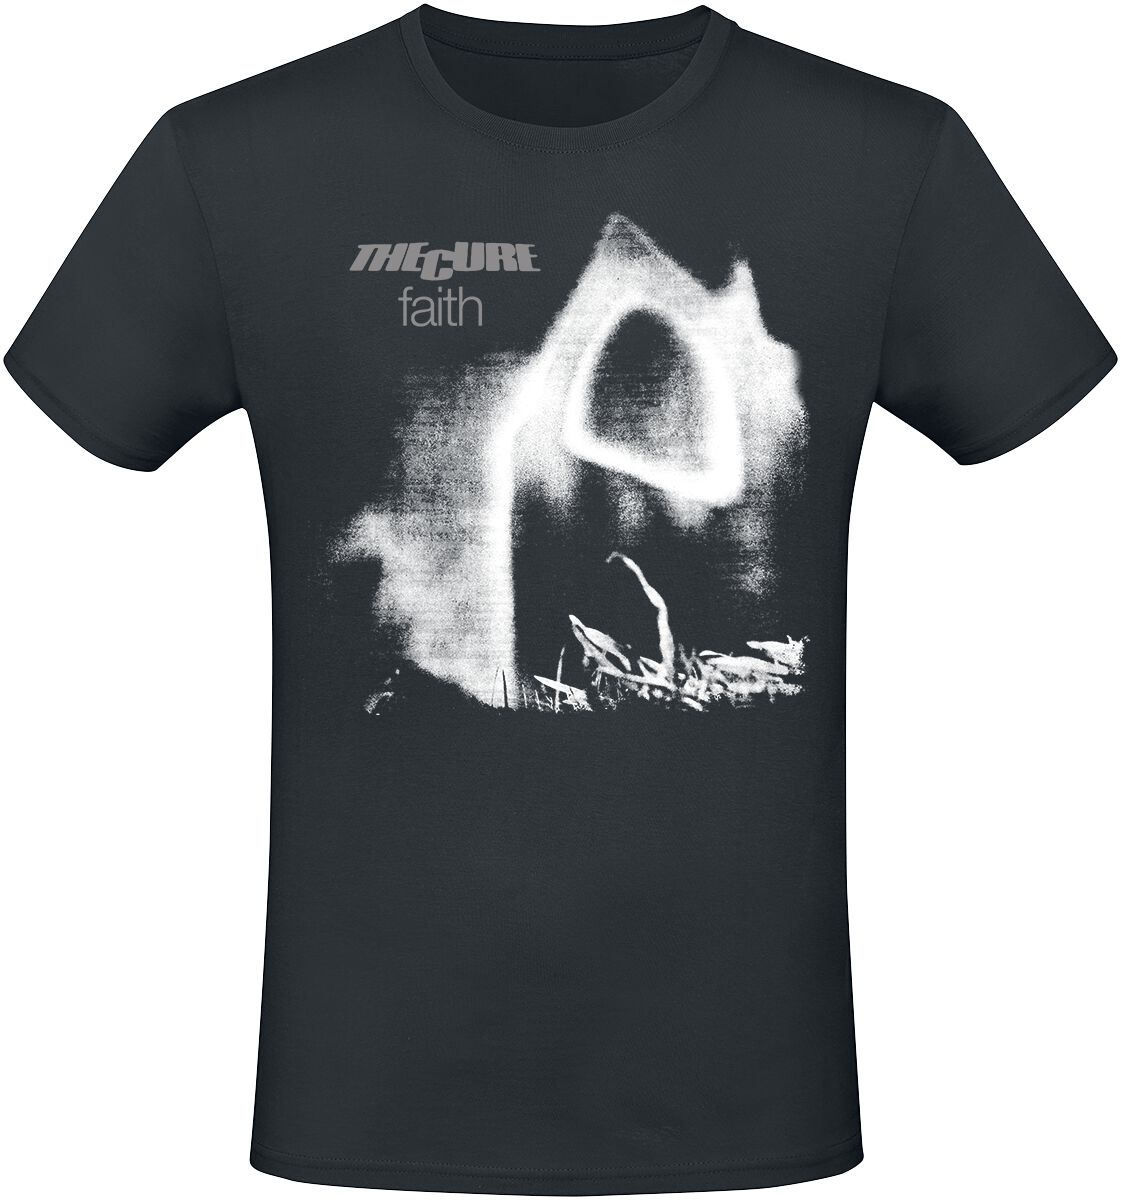 The Cure T-Shirt - Faith - L bis XL - für Männer - Größe L - schwarz  - Lizenziertes Merchandise!